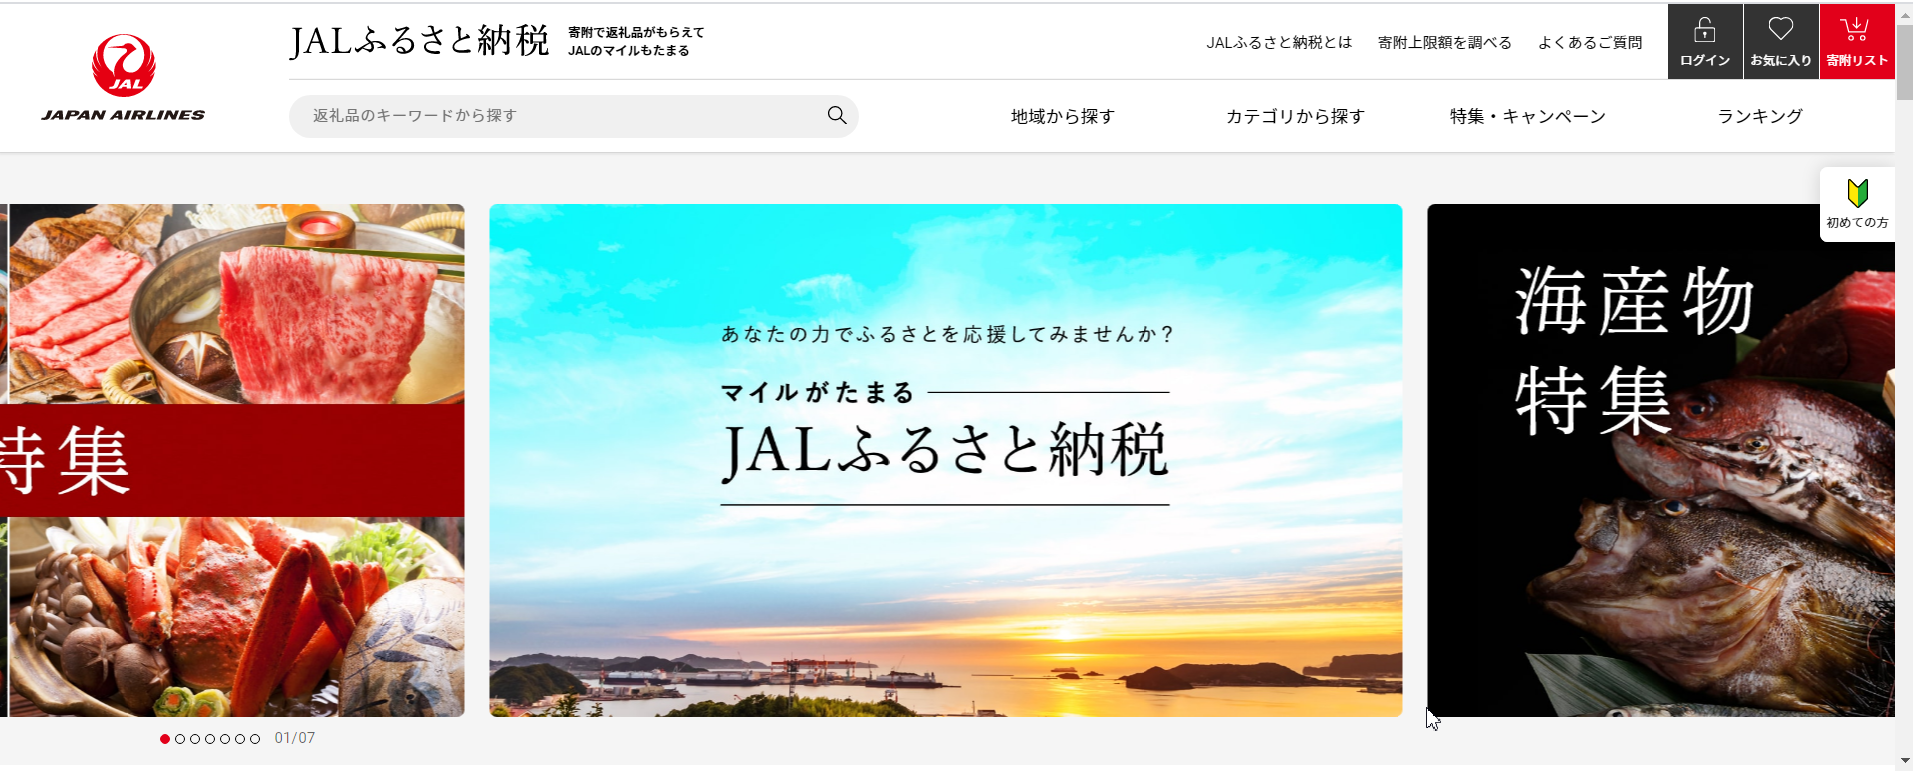 マイルがたまる Jalふるさと納税 サイトオープン 日本航空株式会社のプレスリリース